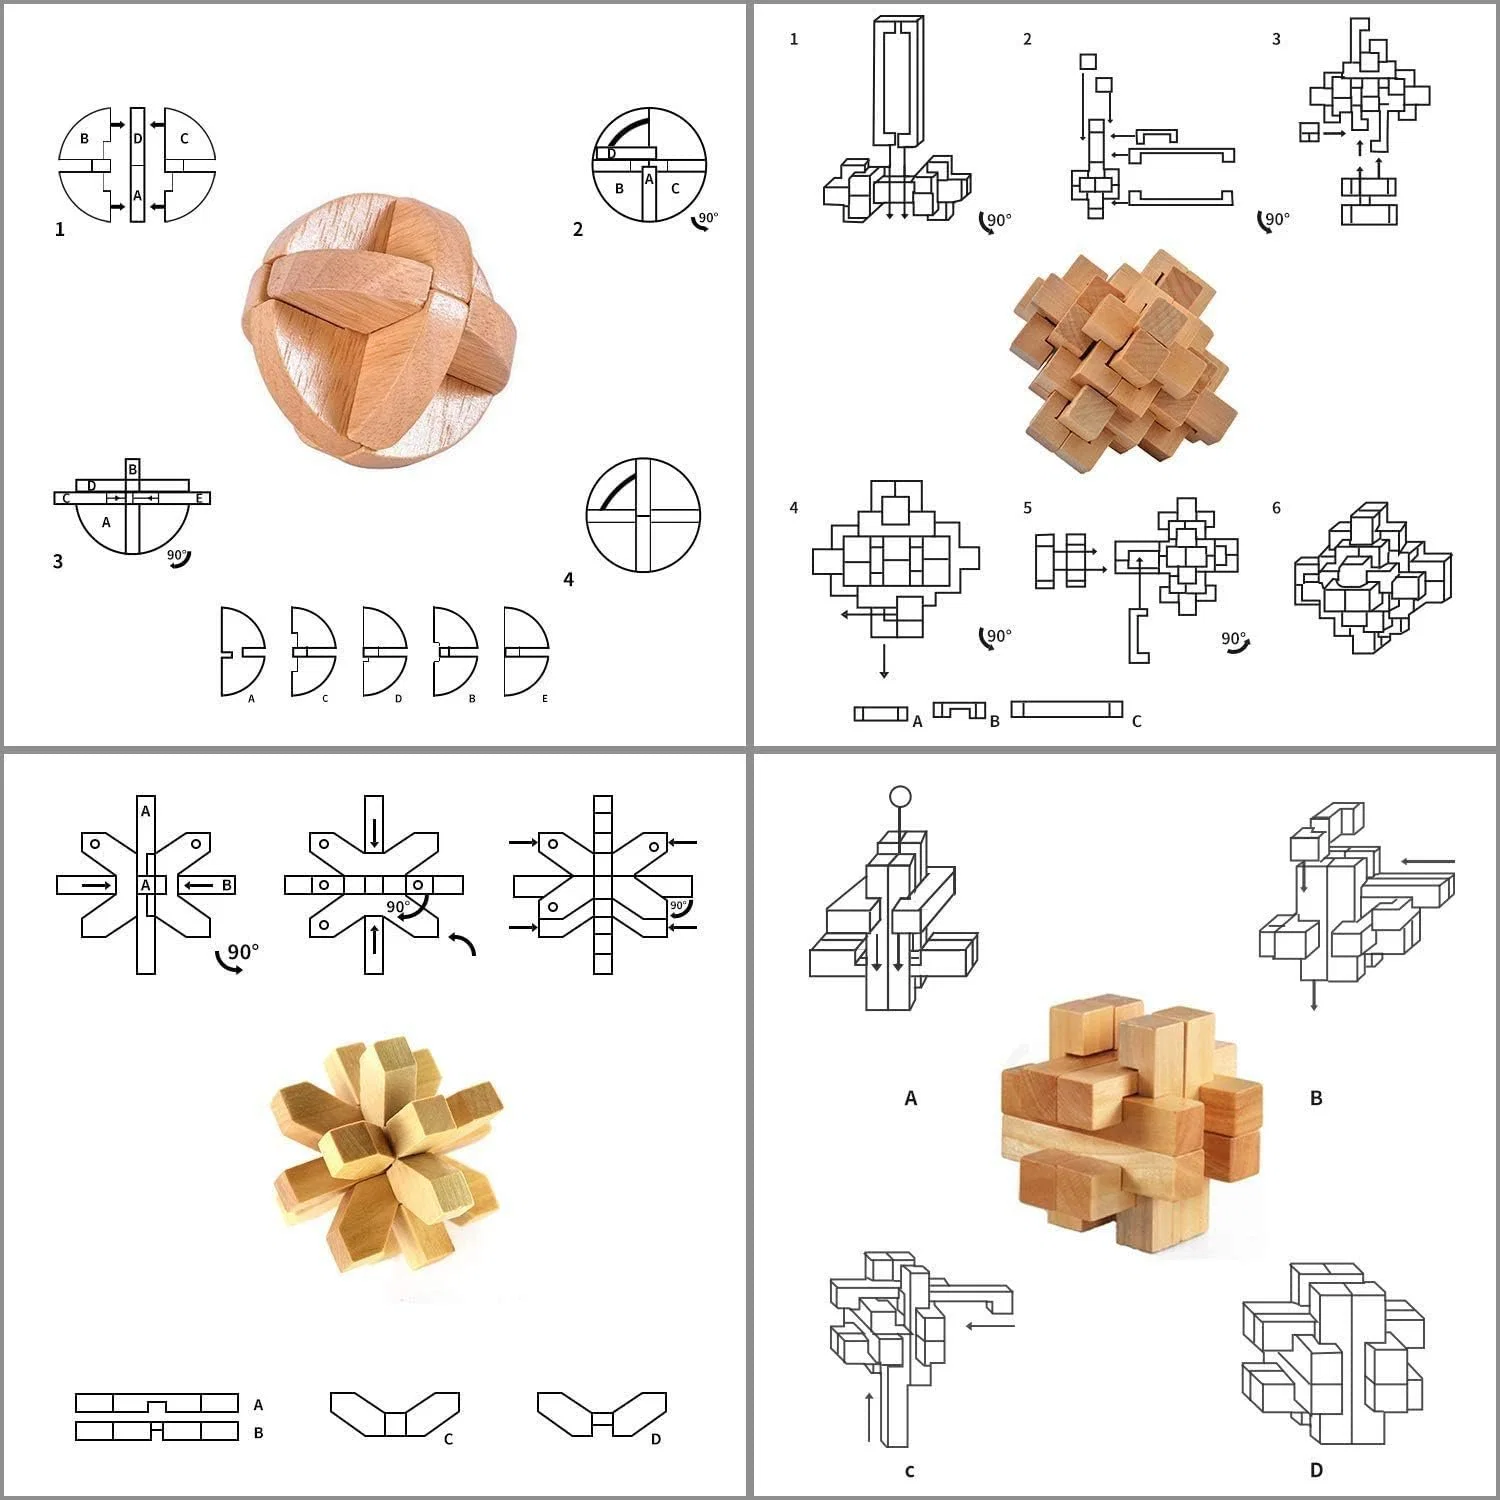 Bamboo 3D Головоломки Металлические Головоломки Головоломки Пуzzles Mind Игровые игрушки Для подростков и взрослых